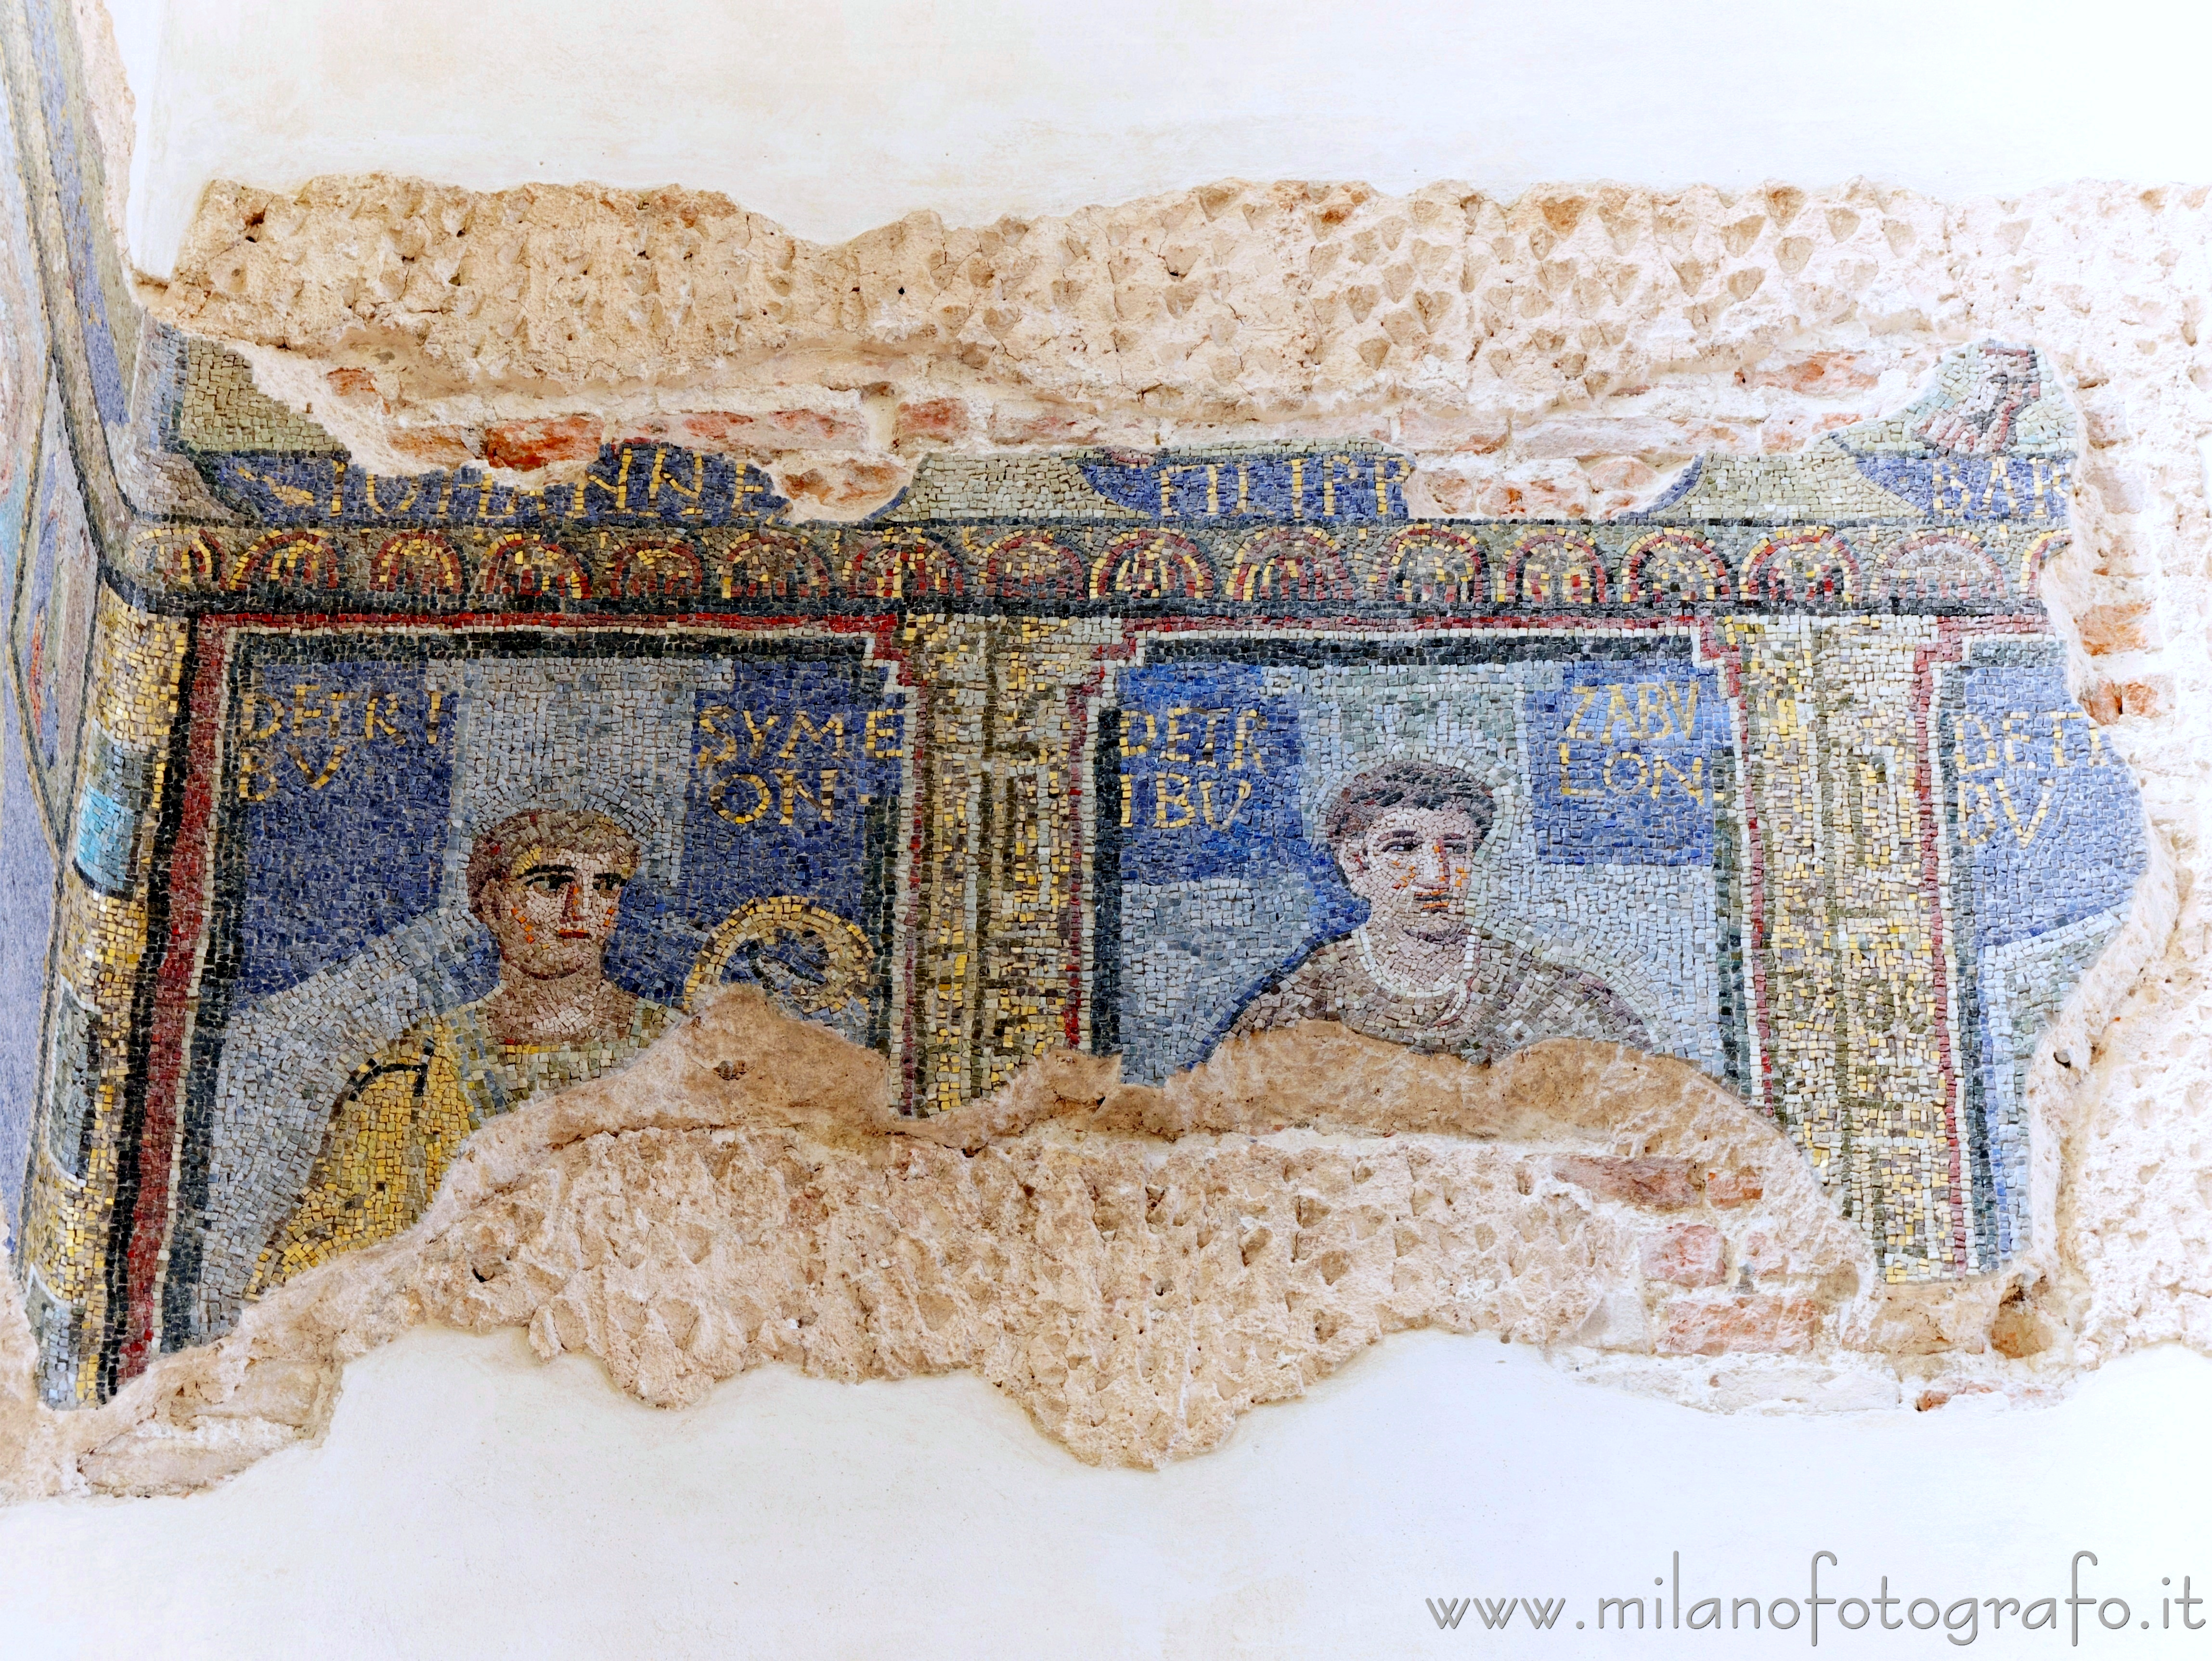 Milano: Dettaglio dei mosaici nell'atrio della Cappella di Sant'Aquilino nella Basilica di San Lorenzo Maggiore - Milano